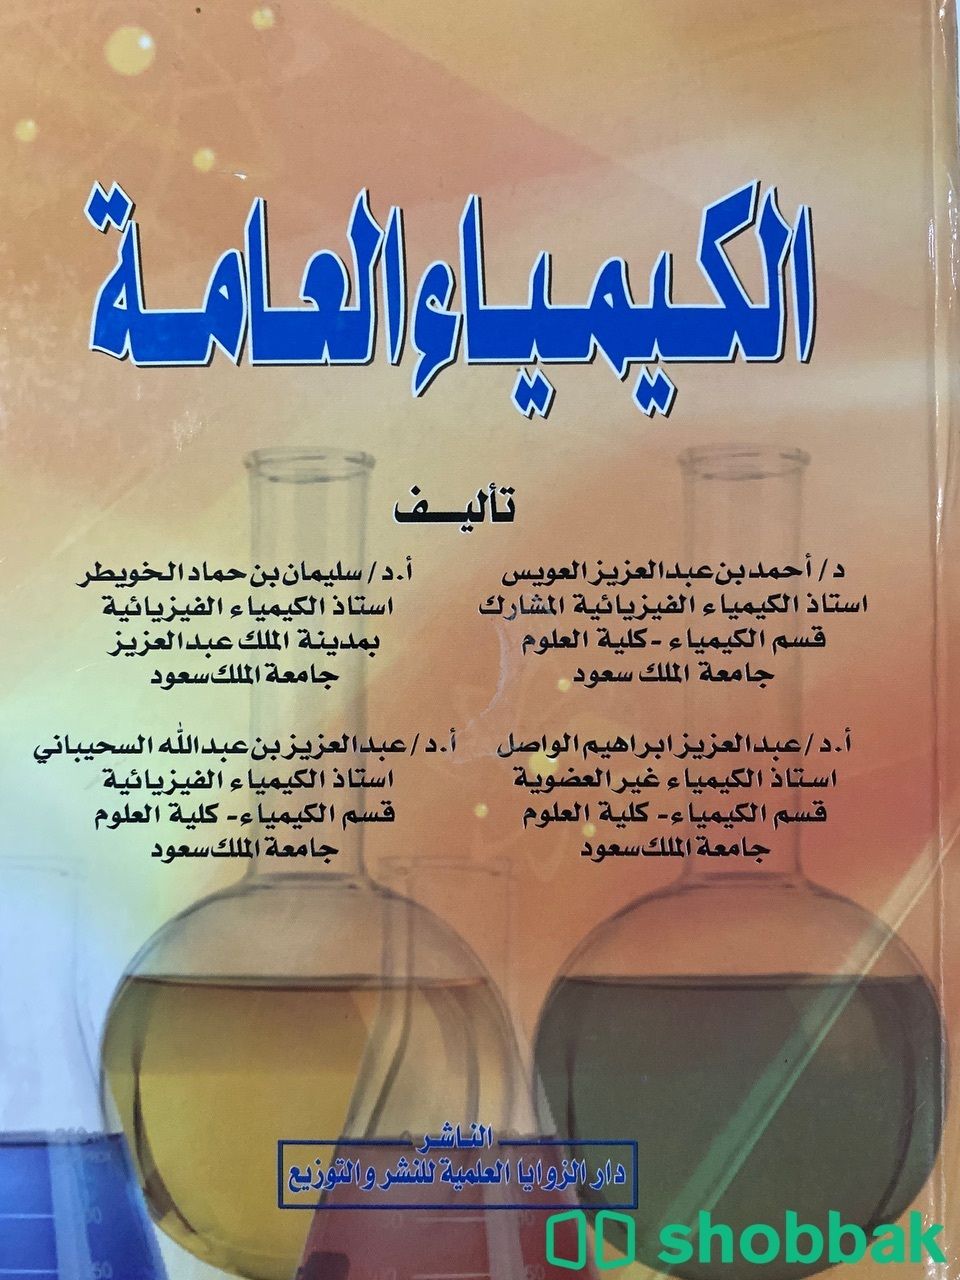 كتاب كيمياء  Shobbak Saudi Arabia